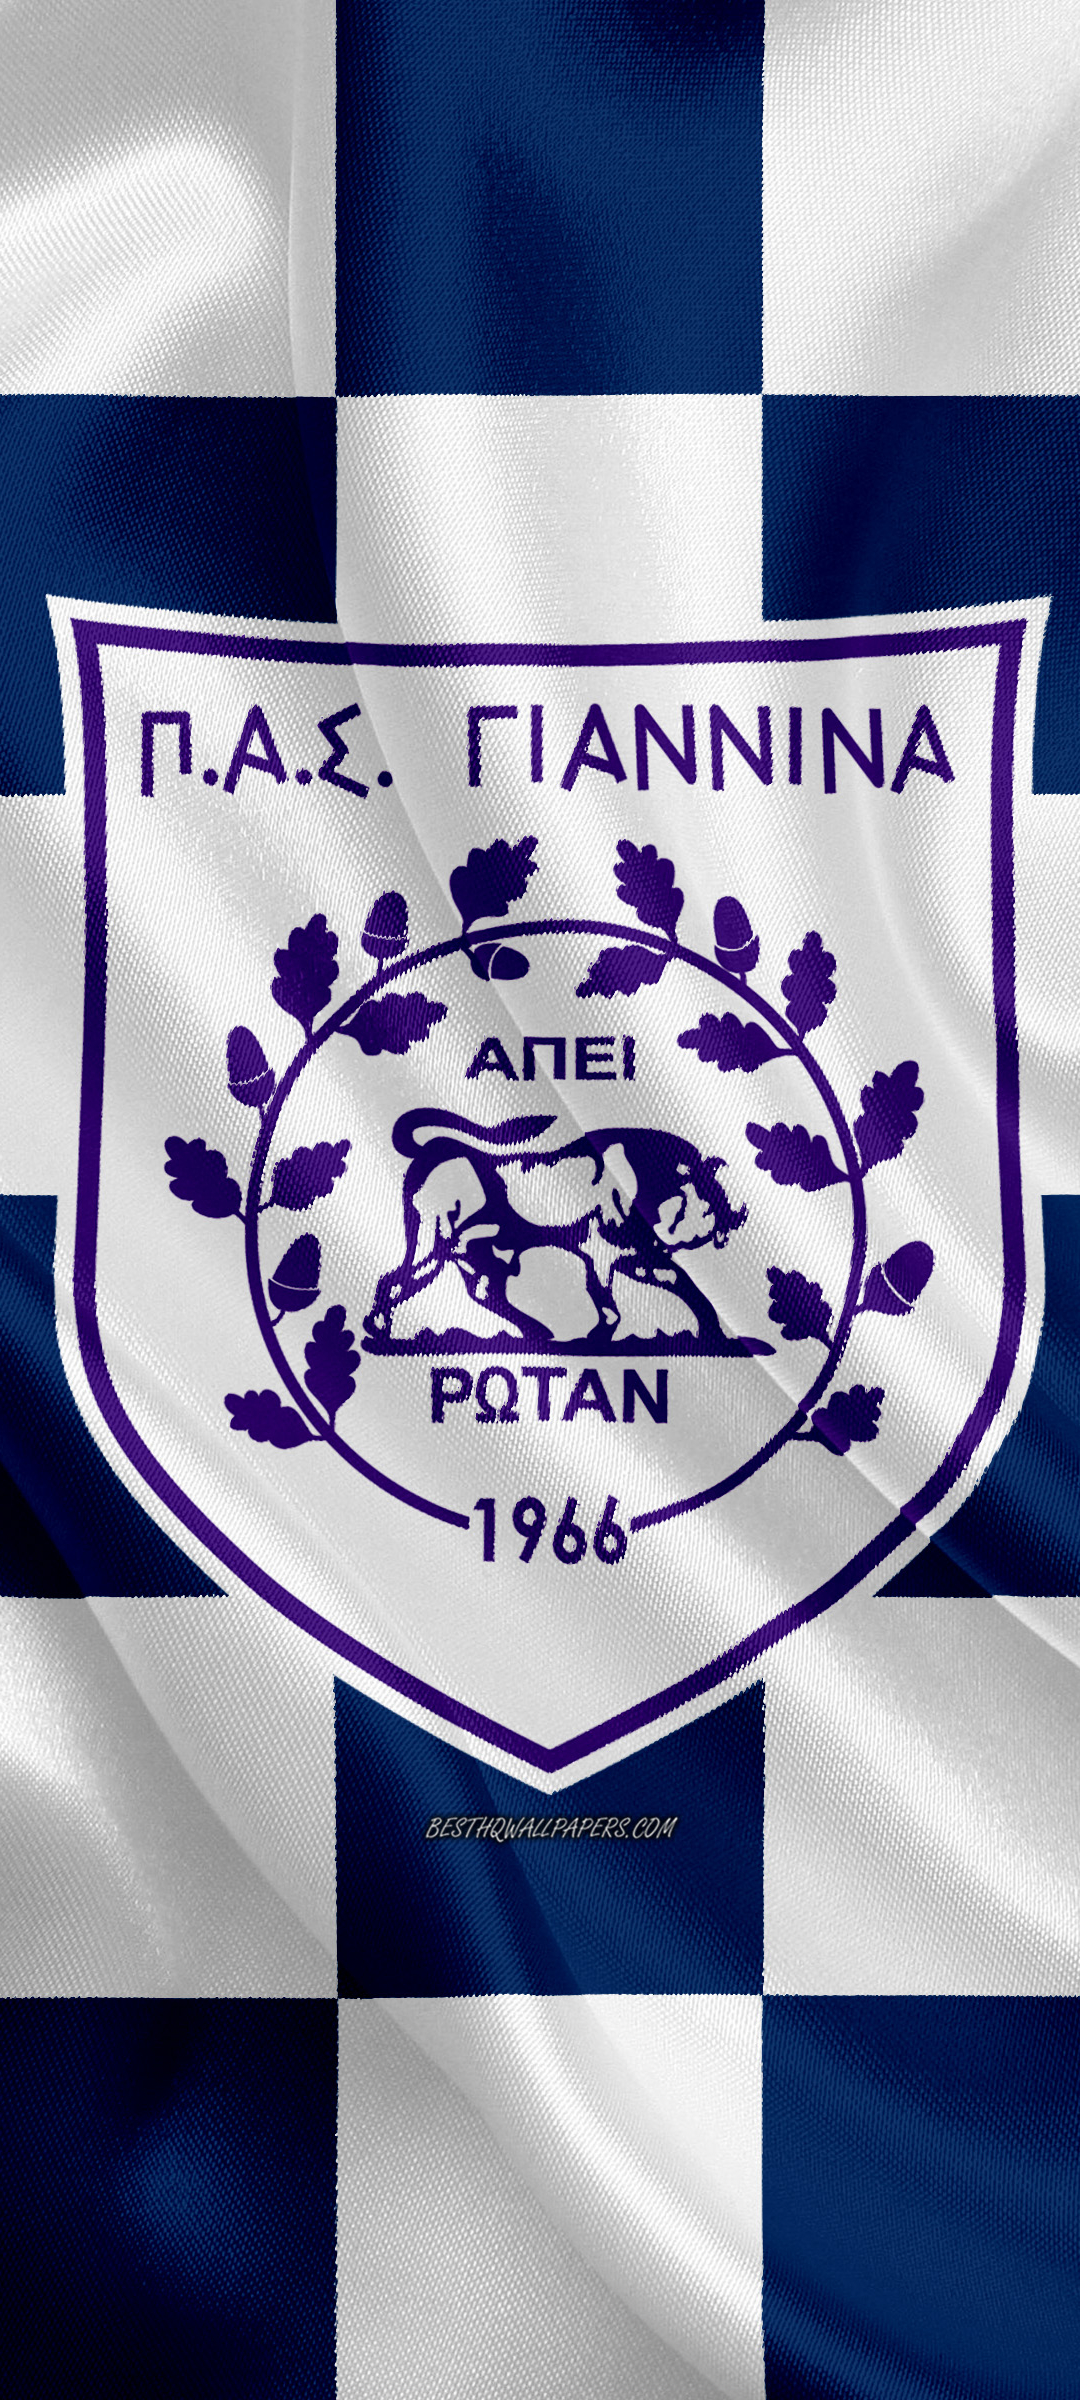 Descarga gratuita de fondo de pantalla para móvil de Fútbol, Logo, Emblema, Deporte, Pas Giannina Fc.